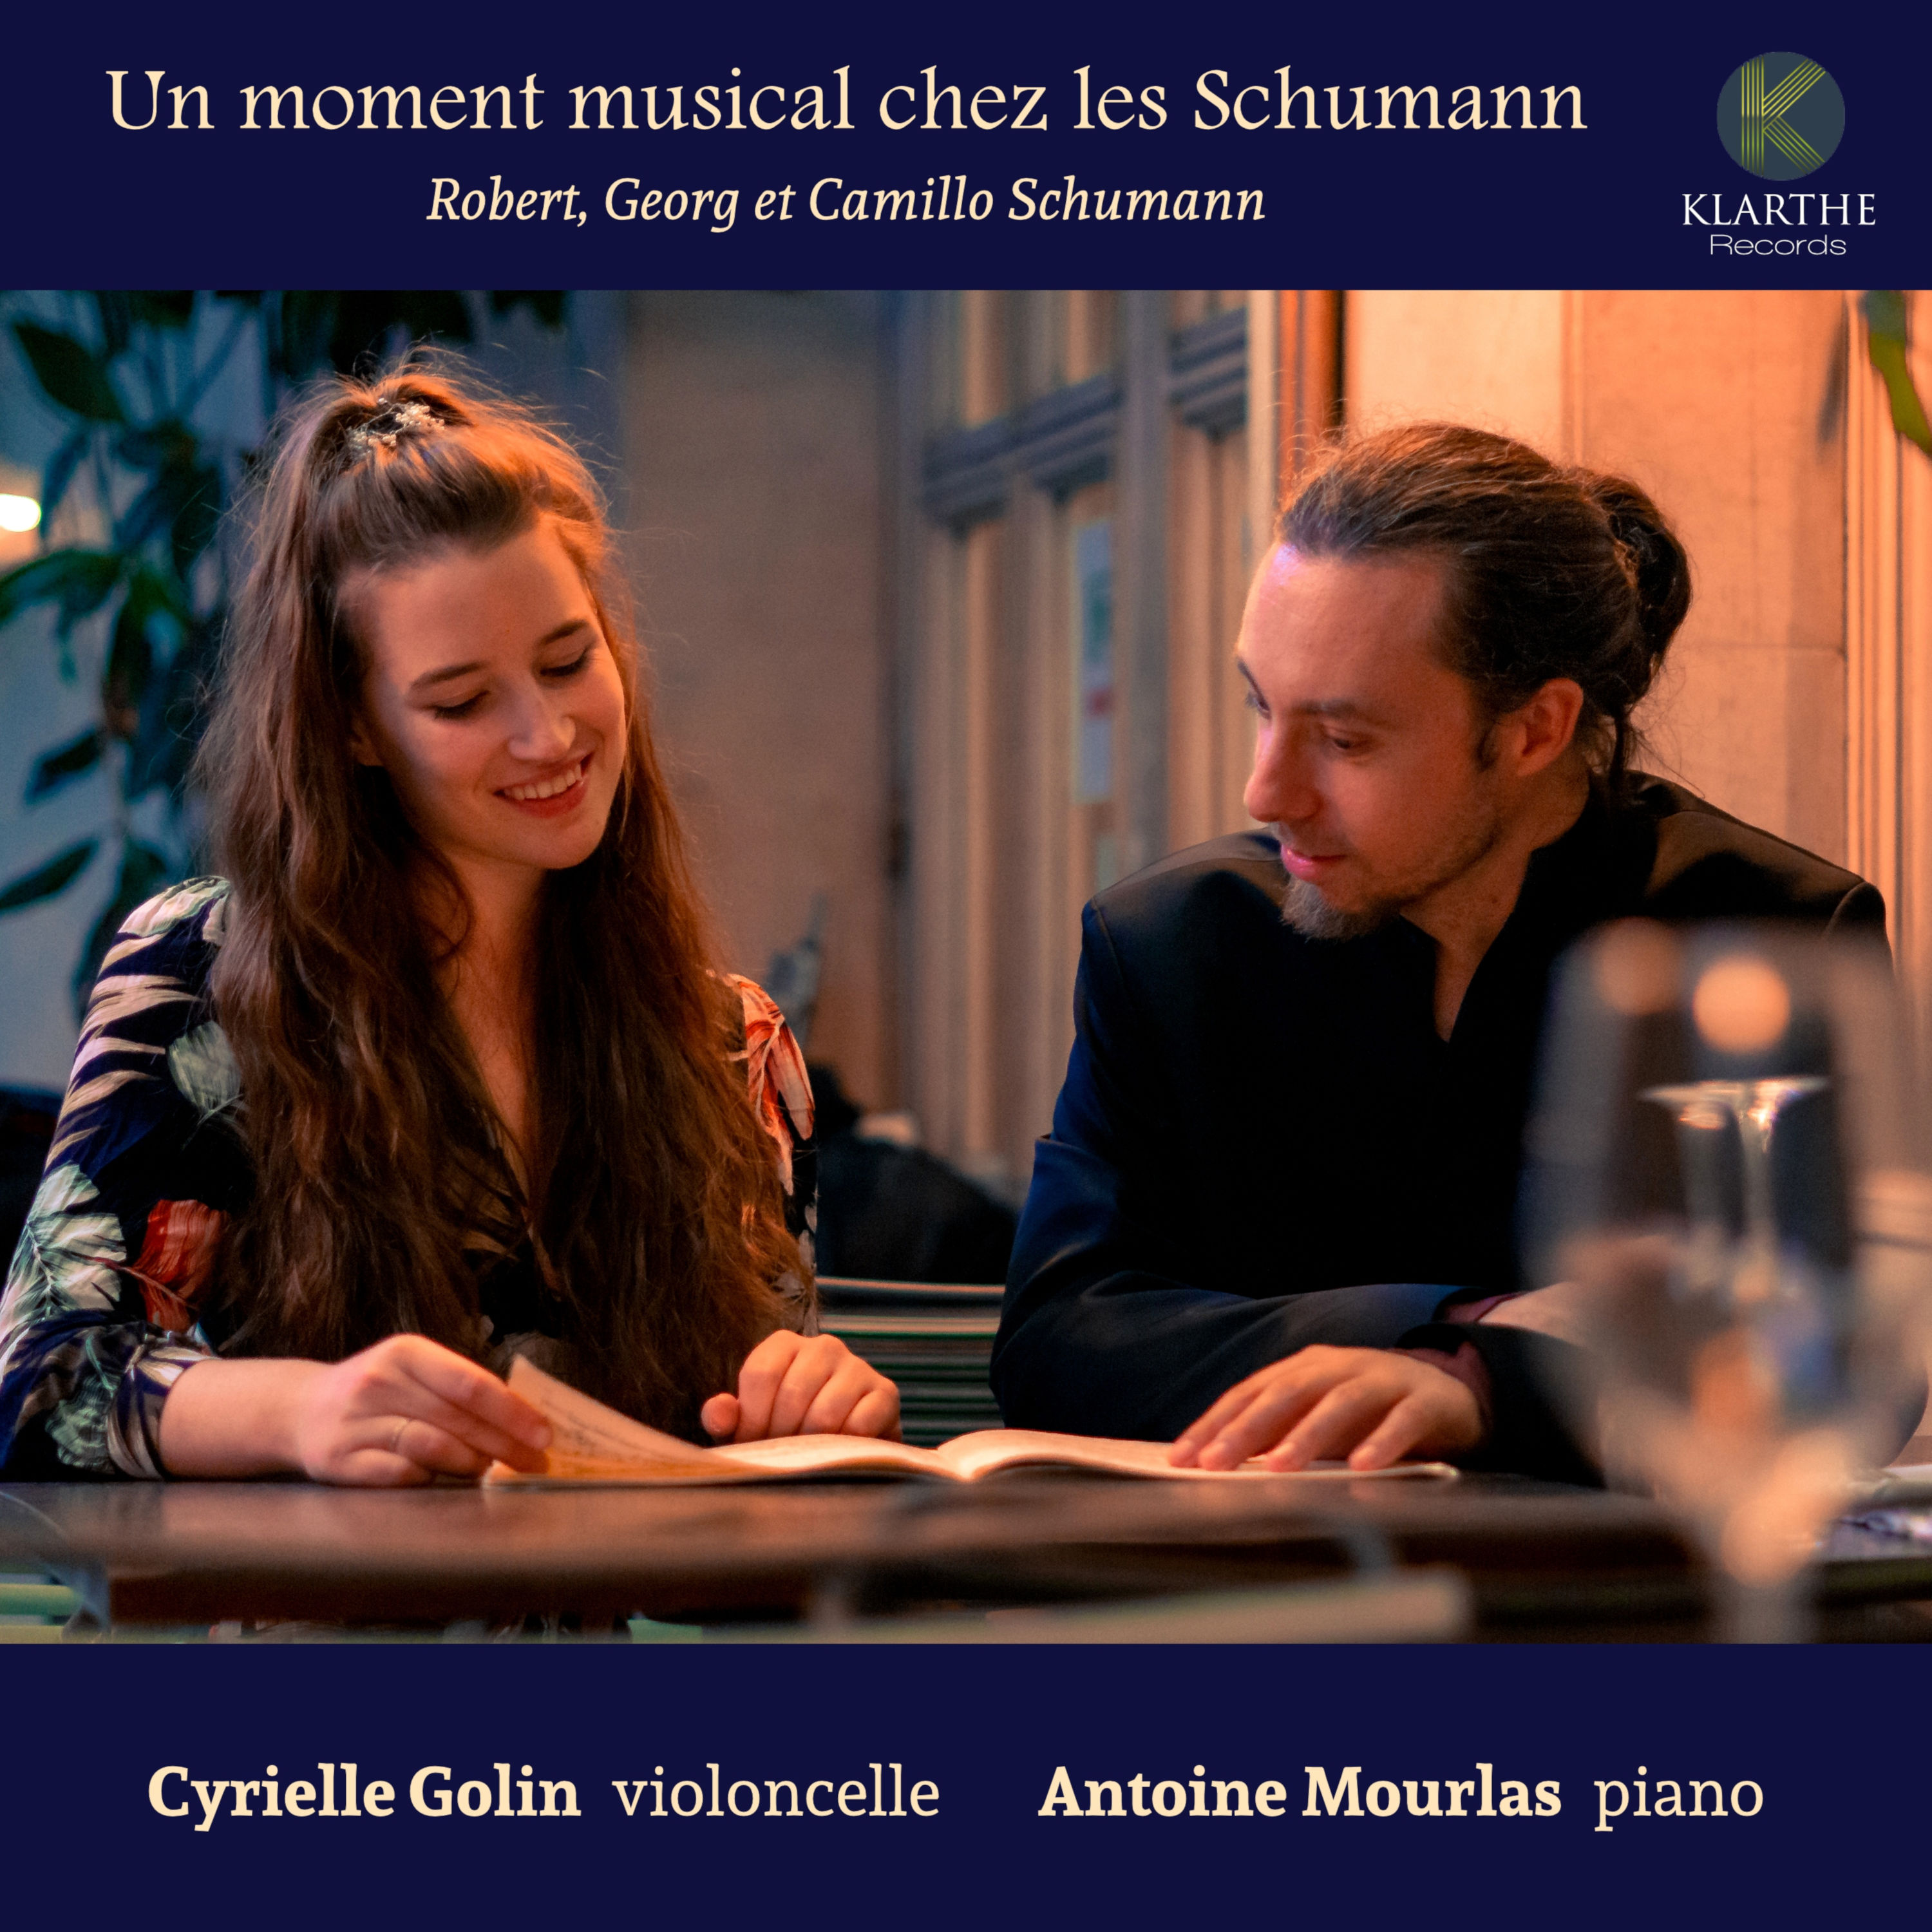 Cyrielle Golin & Antoine Mourlas – Un moment musical chez les Schumann (2020) [FLAC 24bit/96kHz]